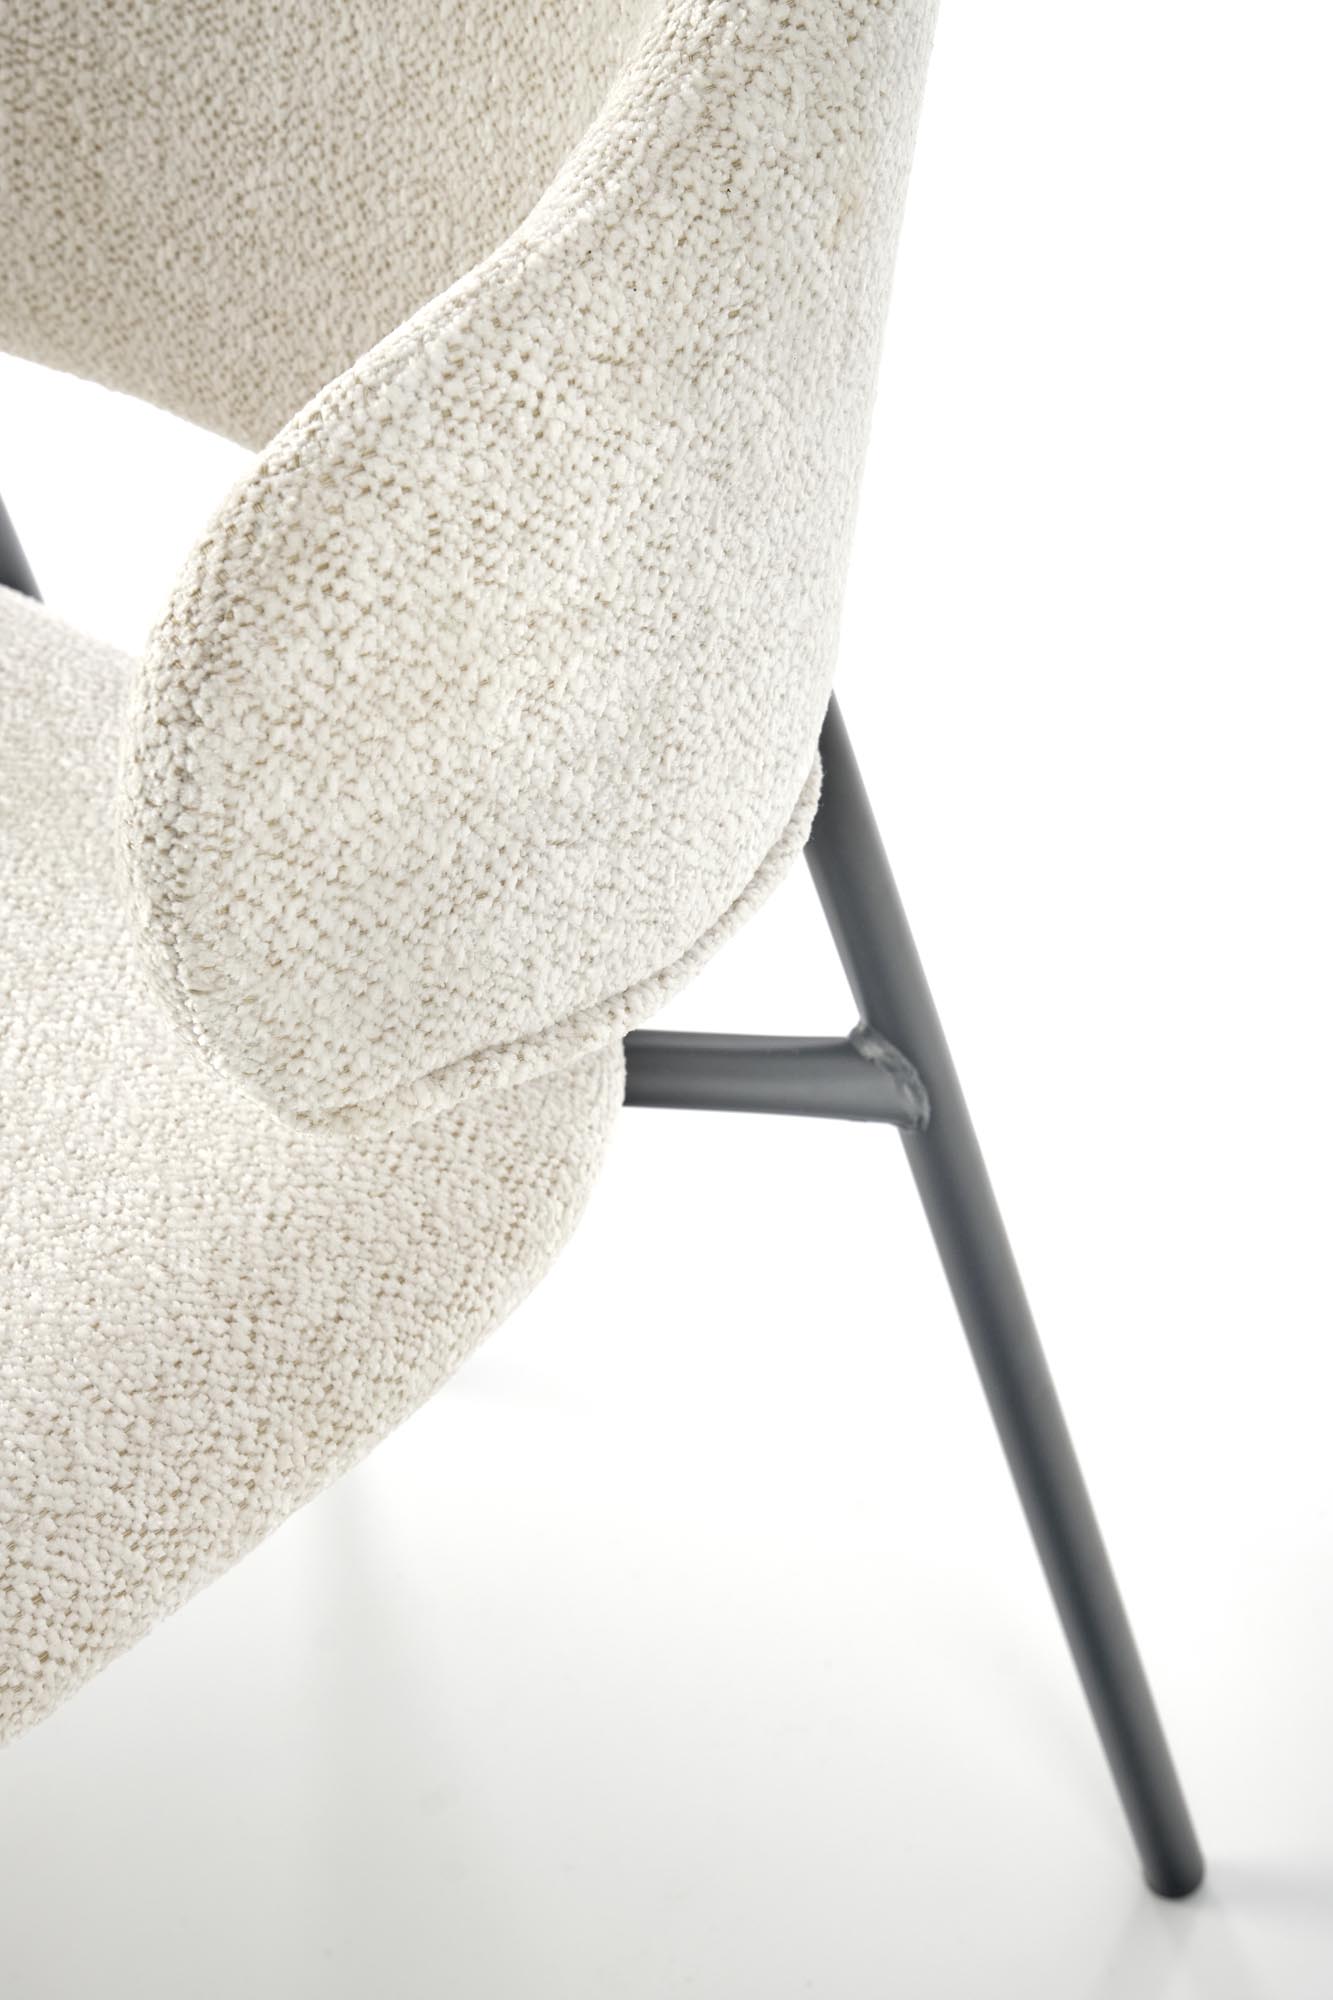 Krzesło tapicerowane z profilowanym oparciem K497 - kremowy krzesło tapicerowane z profilowanym oparciem k497 - kremowy